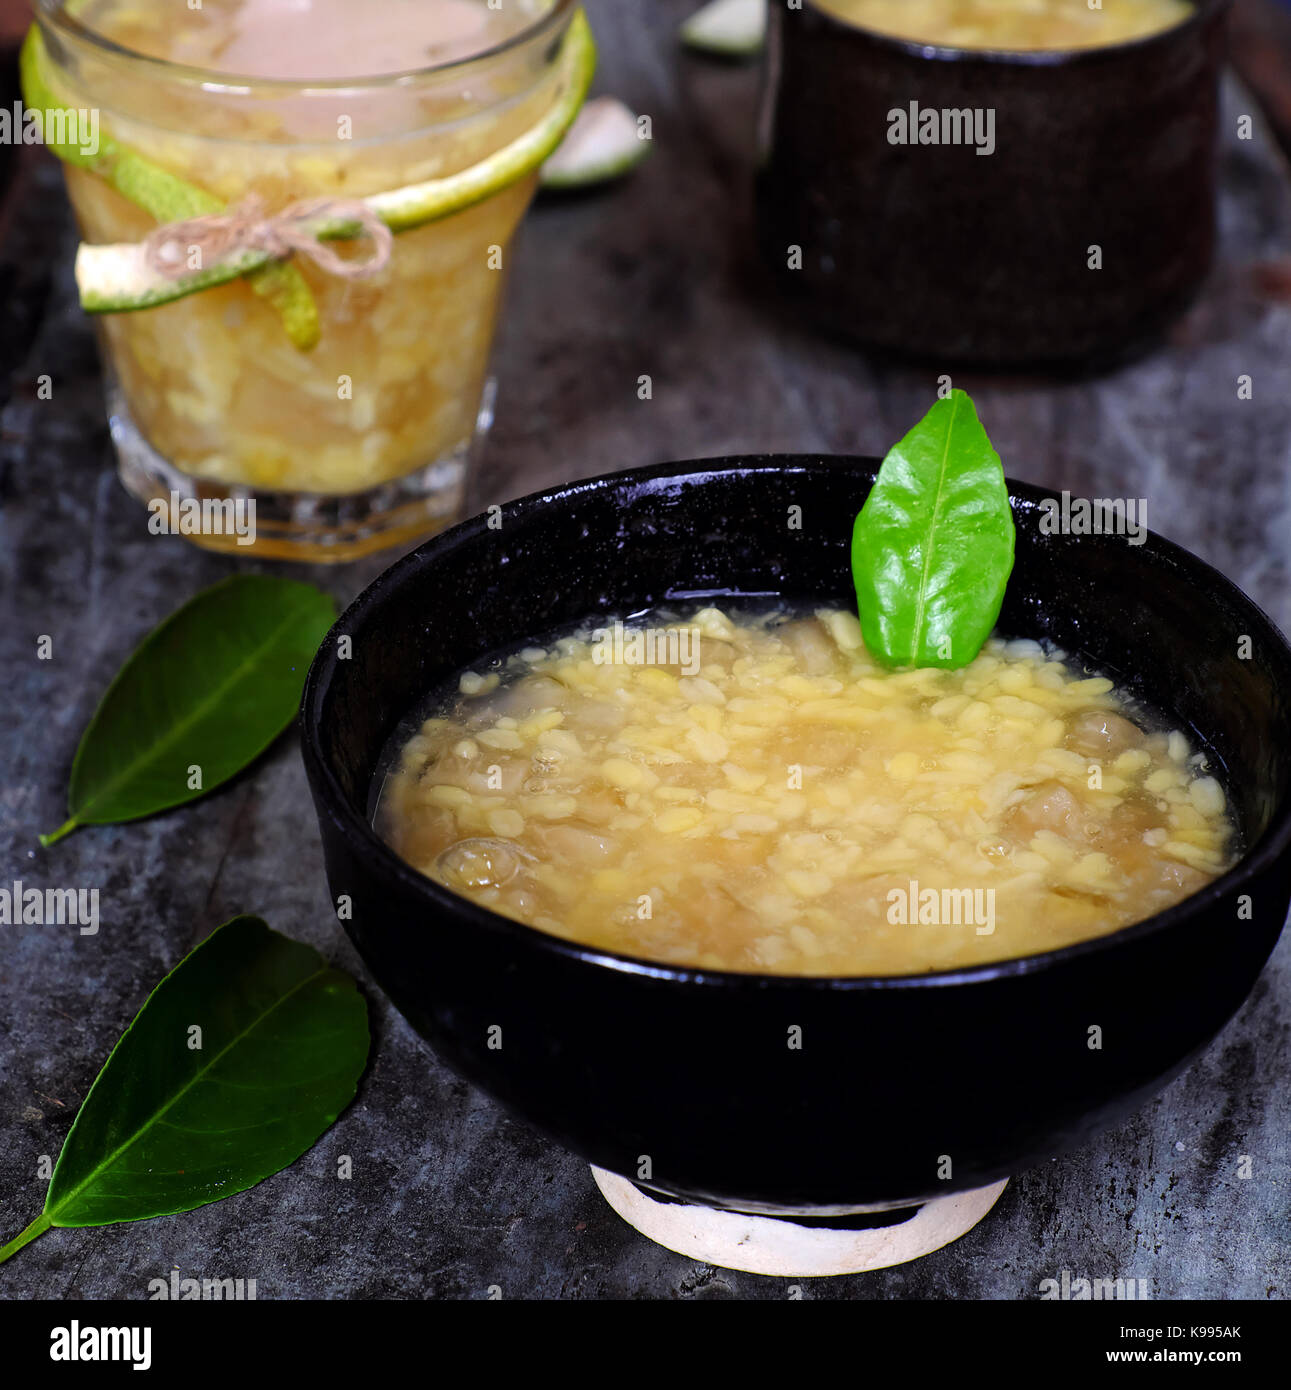 La nourriture vietnamienne pour dessert, che buoi ou de pamplemousse, un doux gruel populaires Soupe sucrée de fruits raisin couenne effilées avec haricot vert, le lait de coco Banque D'Images